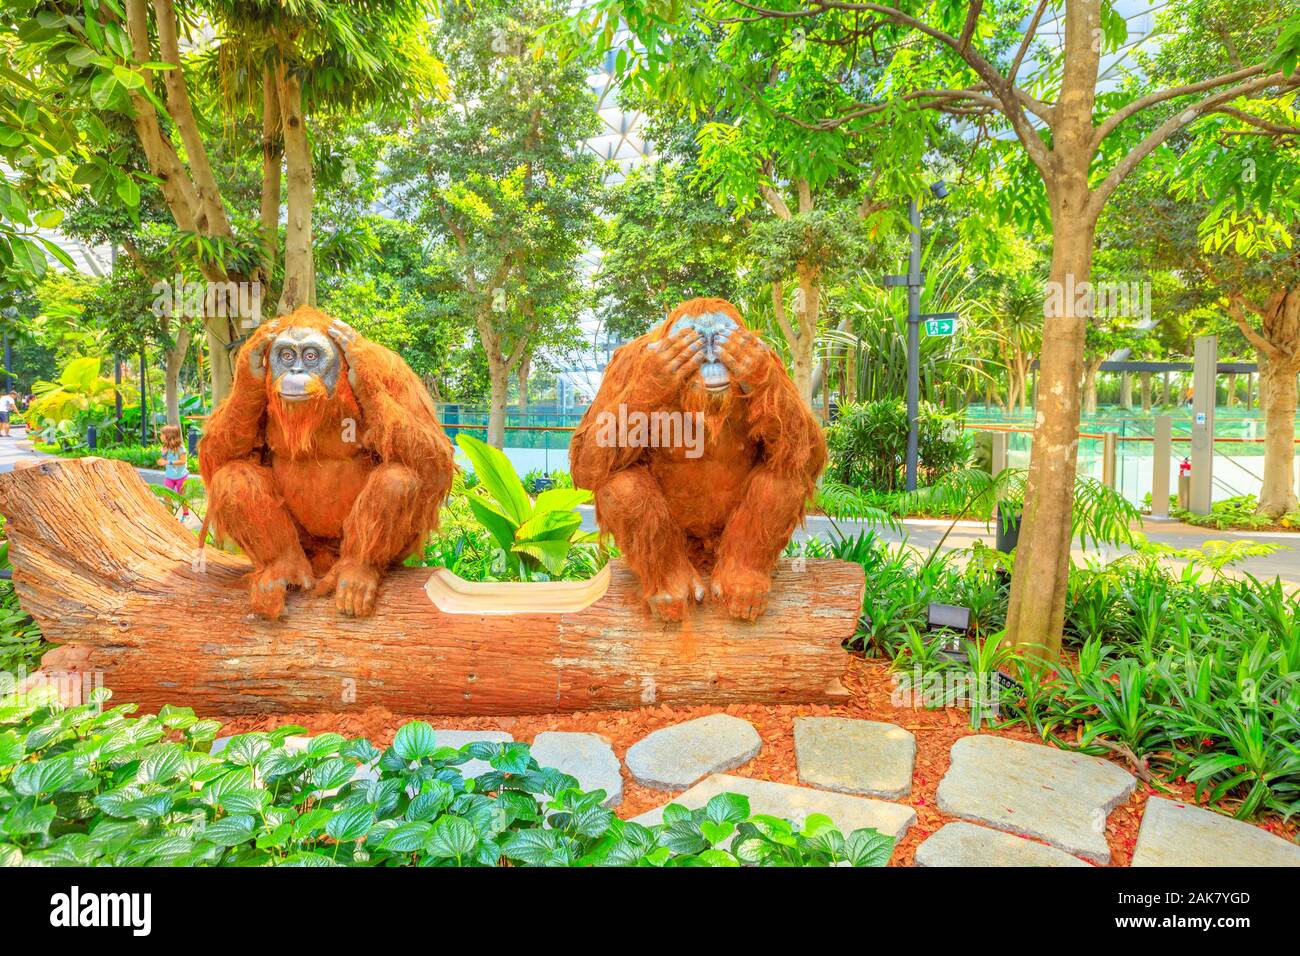 Singapur - Aug 8, 2019: zwei Orang-utans Skulptur, Formgehölze Spaziergang am Vordach Park. Jewel Changi Airport ist ein Natur-themed mit Gärten, Sehenswürdigkeiten, ein Stockfoto